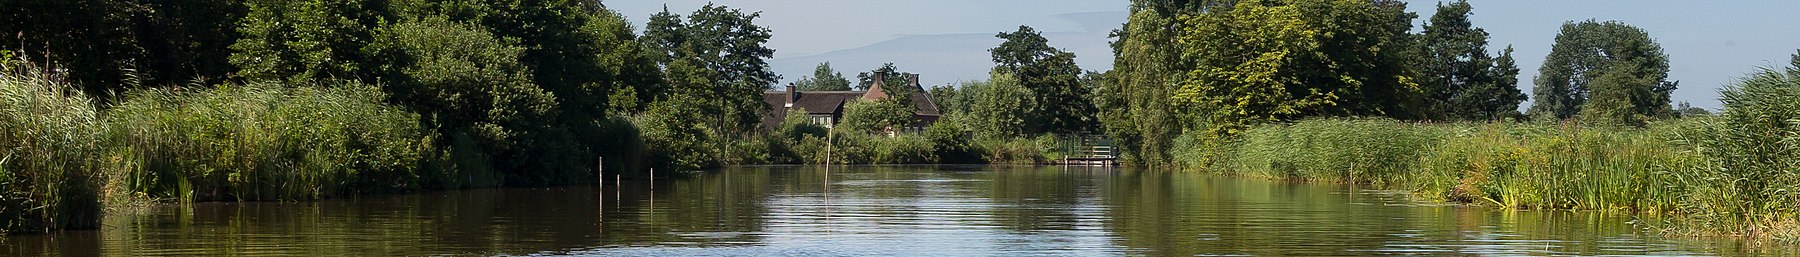 Woerdense Verlaat, sungai Meije berhampiran Bosweg photo12 2017-07-09 11.01 pagebanner.jpg